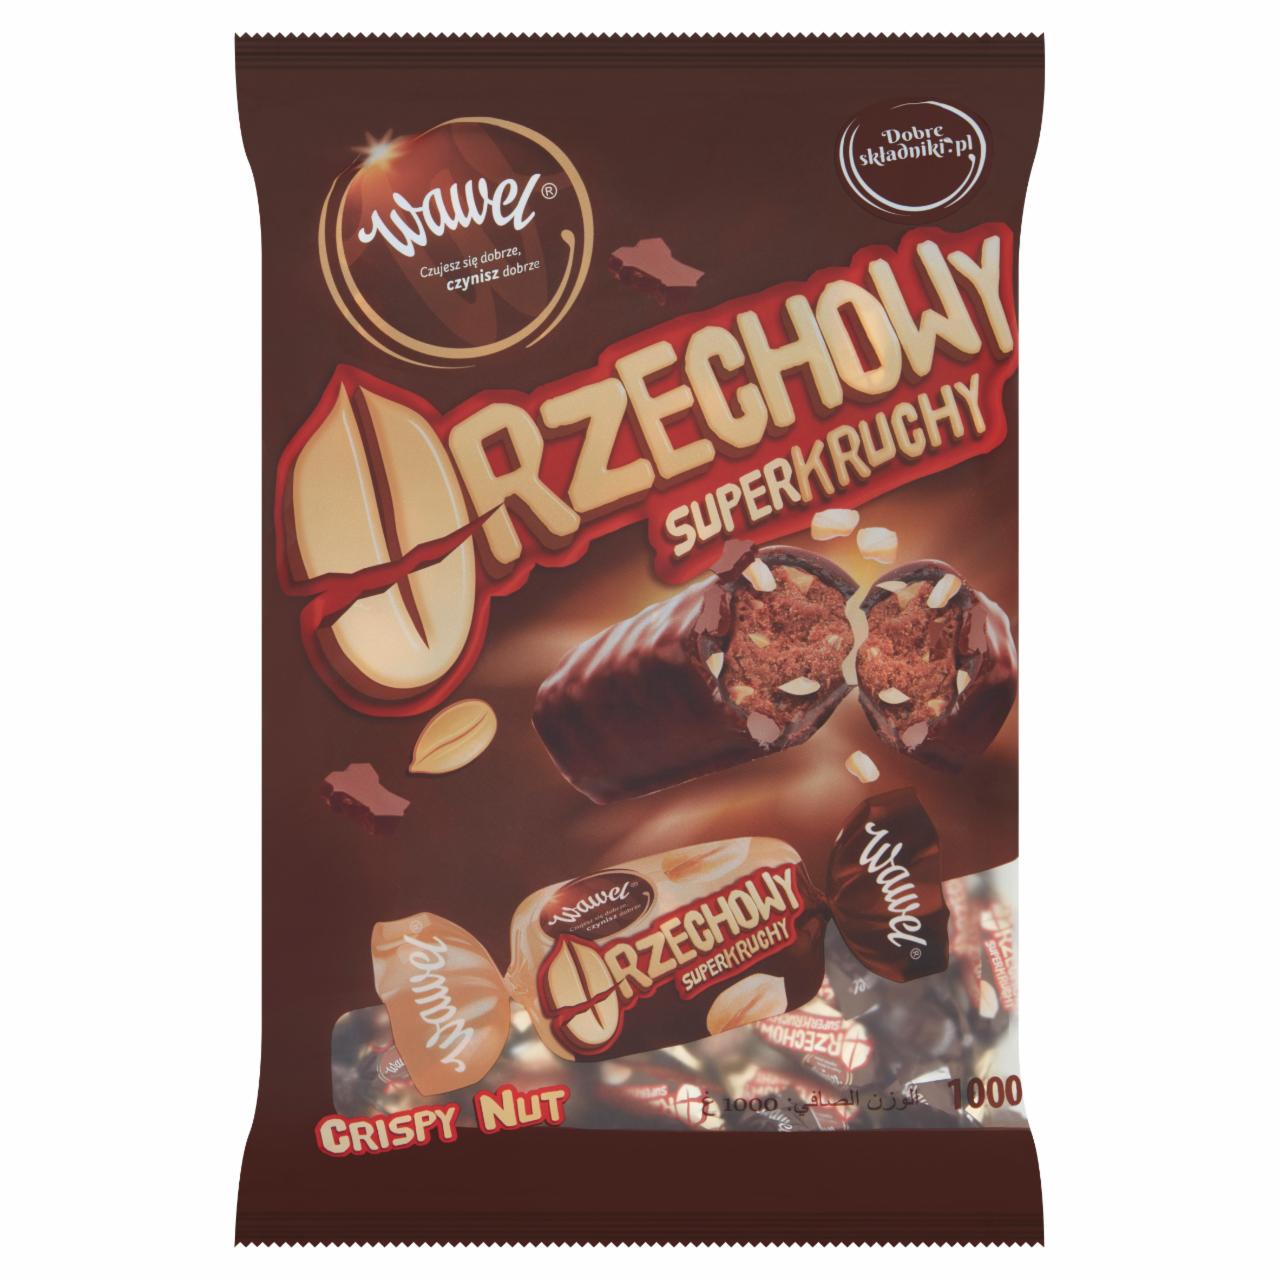 Zdjęcia - Wawel Orzechowy superkruchy Cukierki w czekoladzie z nadzieniem orzechowym 1000 g